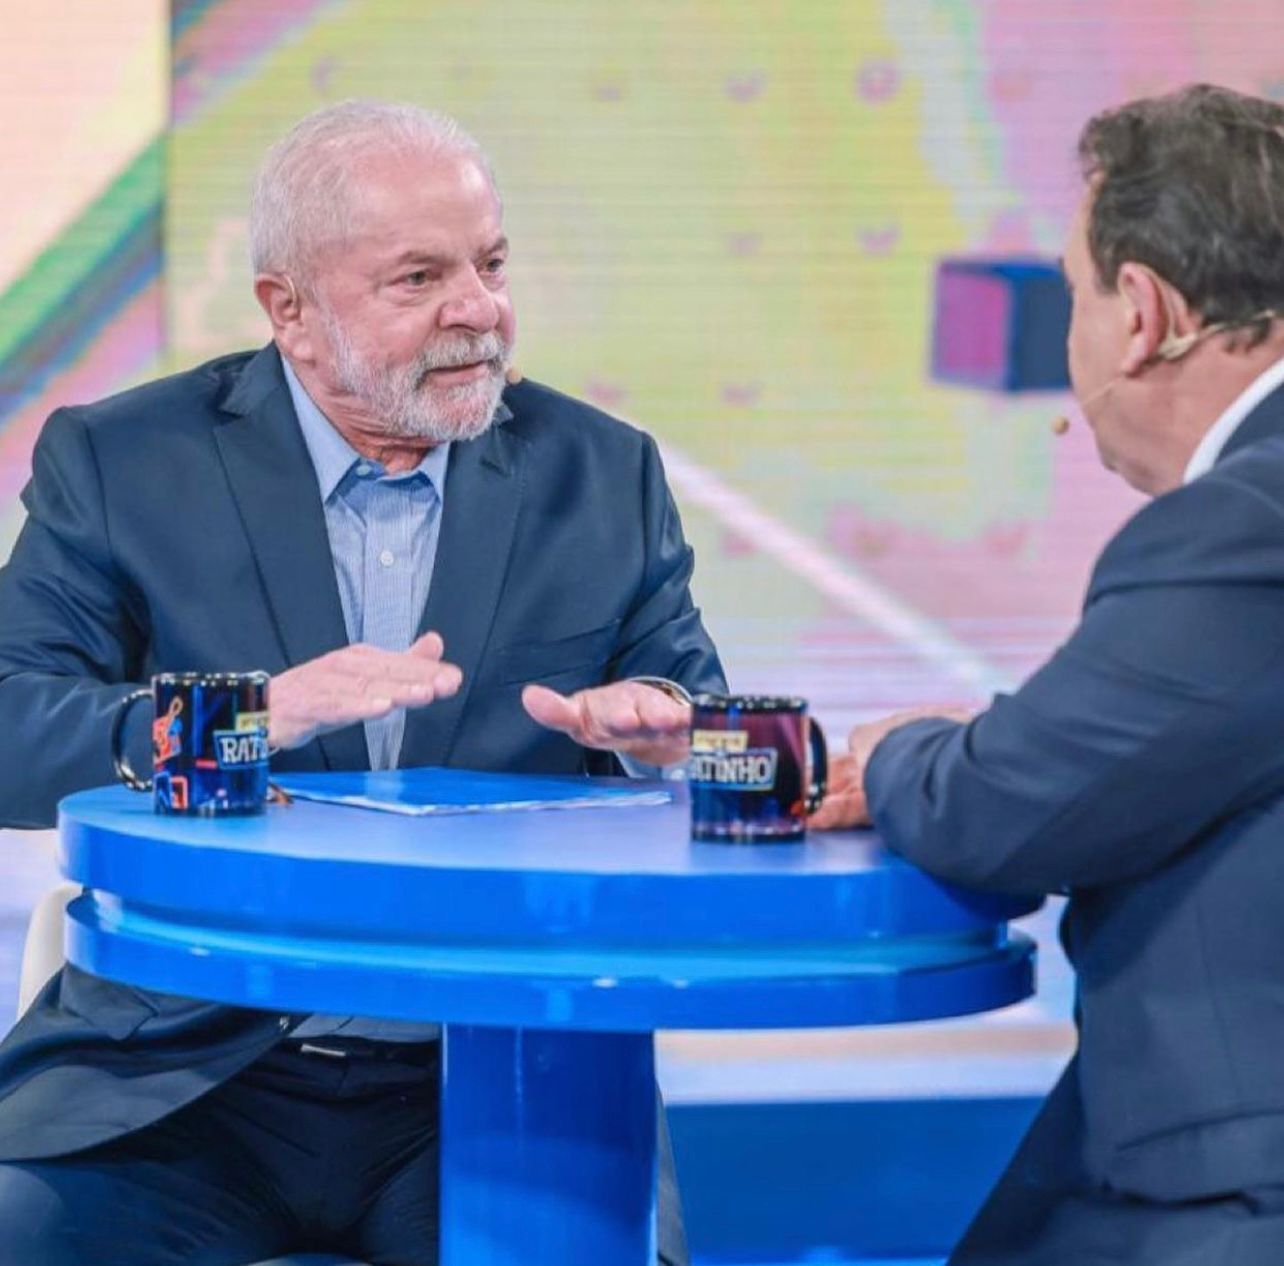 Ao estilo ‘tanto faz’, Lula diz que vai conversar com todos os governadores eleitos, independente do partido